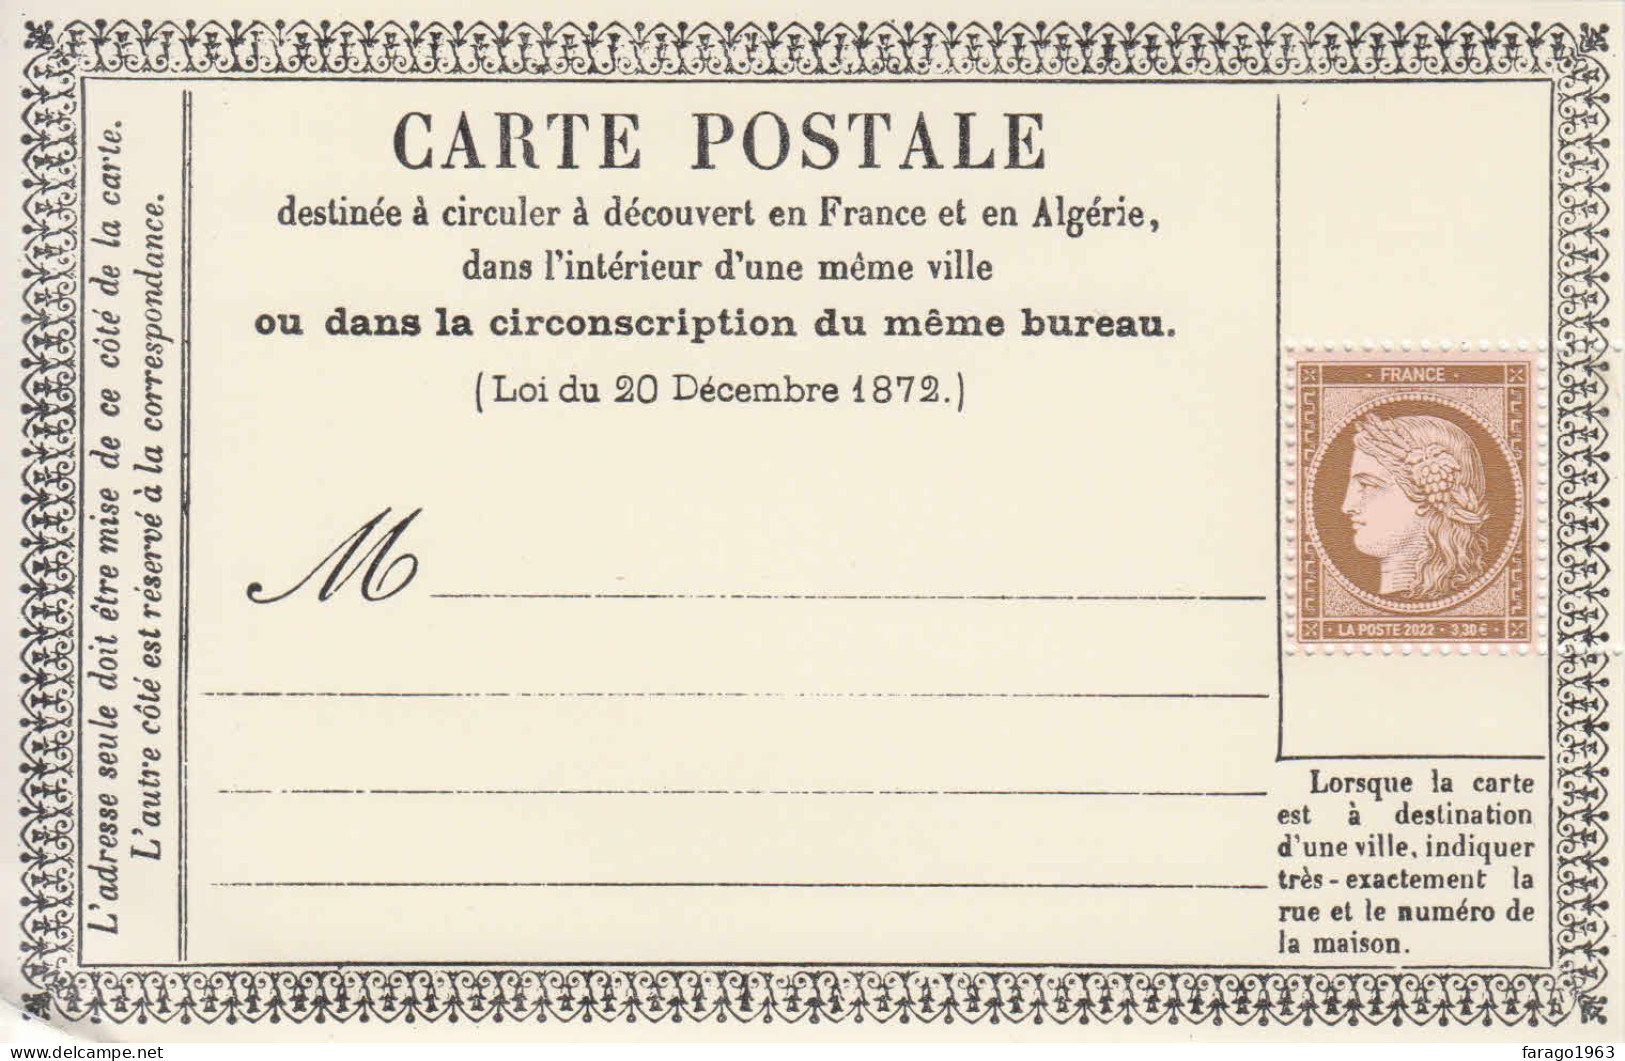 2022 France Carte Postale Postcard M/sheet Of 1 MNH @ BELOW FV * Small Crease To Bottom Left Corner Stamp OK* - Unused Stamps